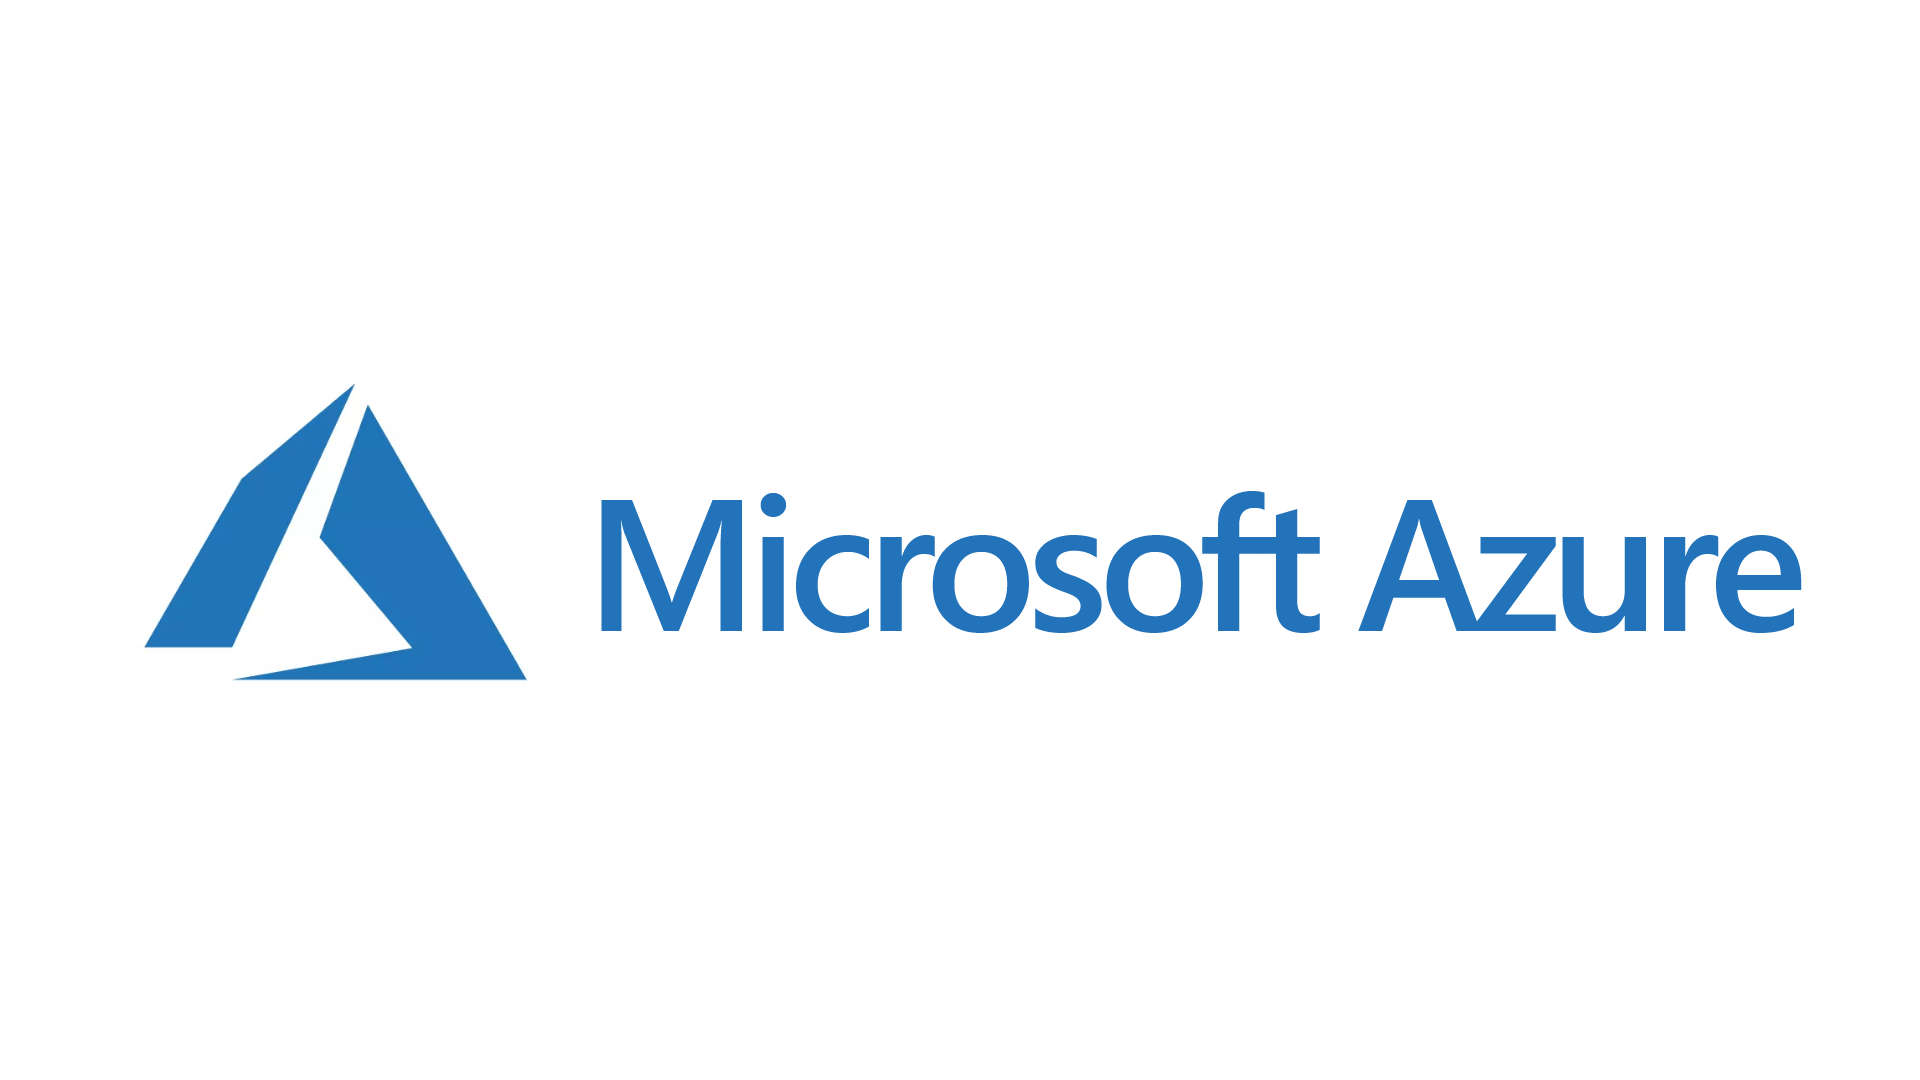 Microsoft विंडोज 10 पुश करने वाले क्लाउड ऐप्स और सेवाओं में वर्षों के बाद कंपनी की व्यावसायिक रणनीतियों के लिए केंद्रीय बनने के लिए?